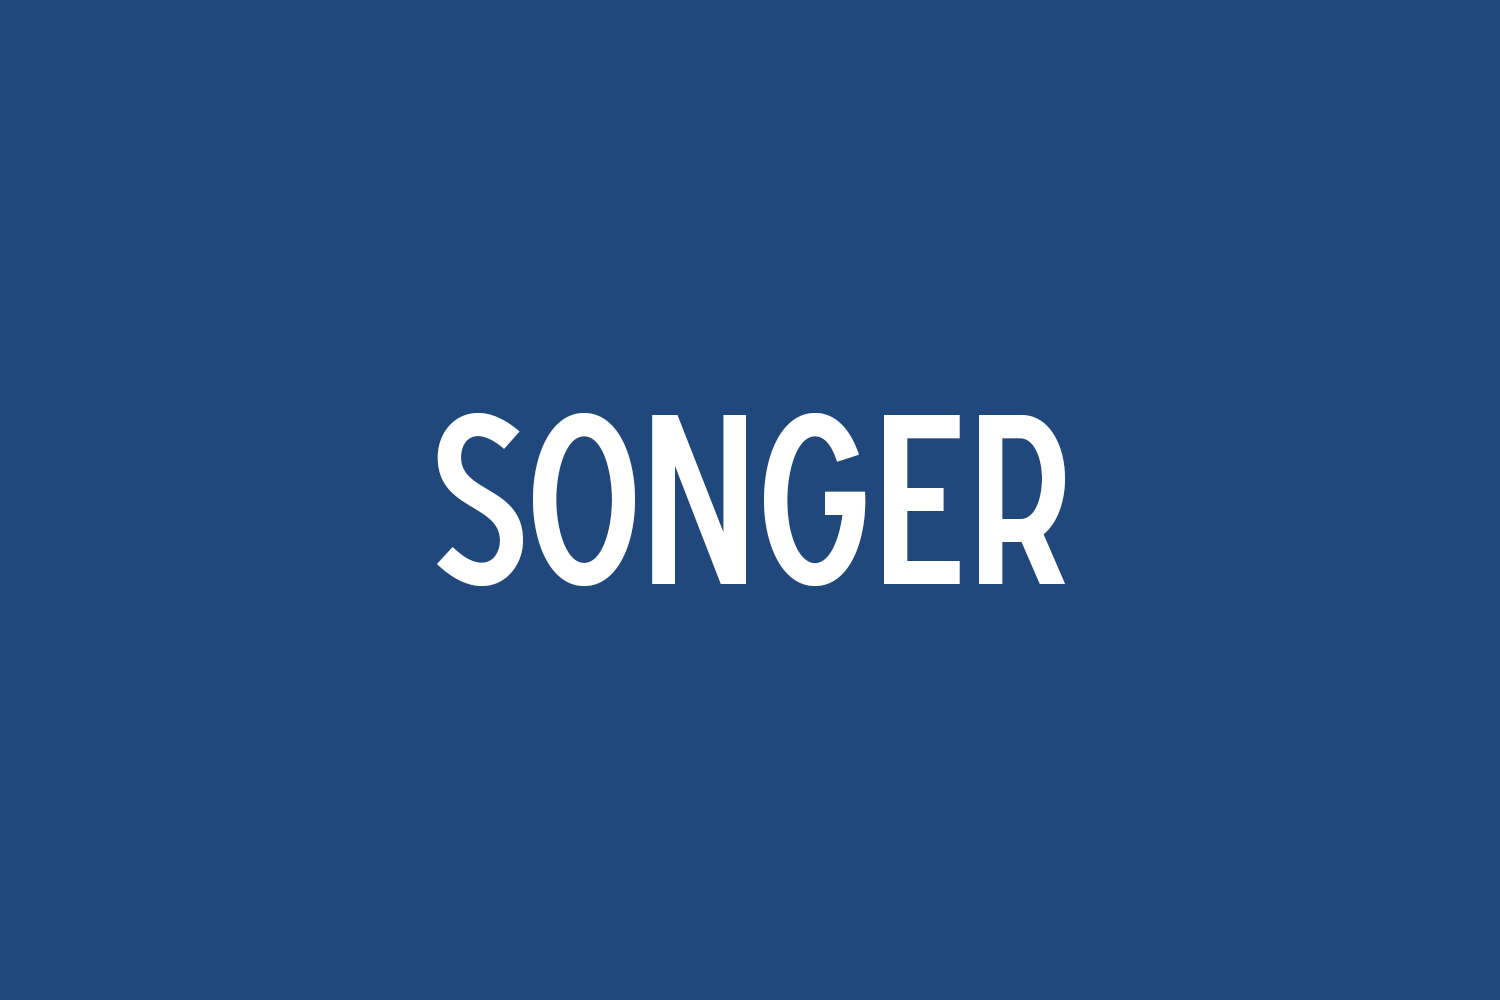 Songer Free Font